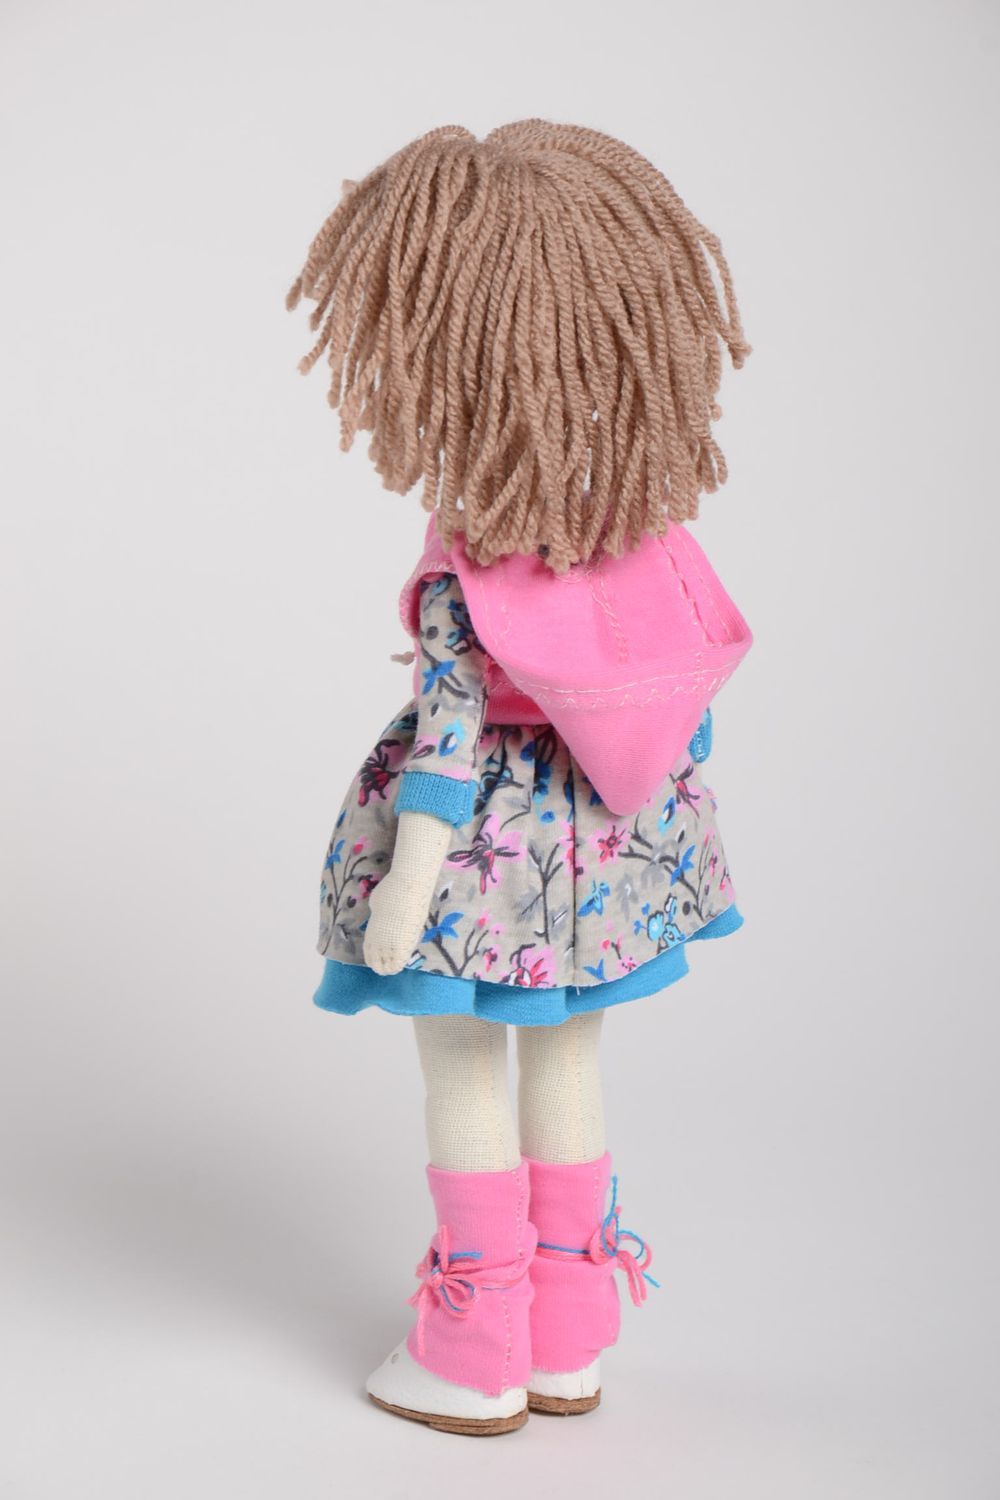 Handmade Designer Puppe Stoff Spielzeug süße schöne Puppe im bunten Kleid foto 4